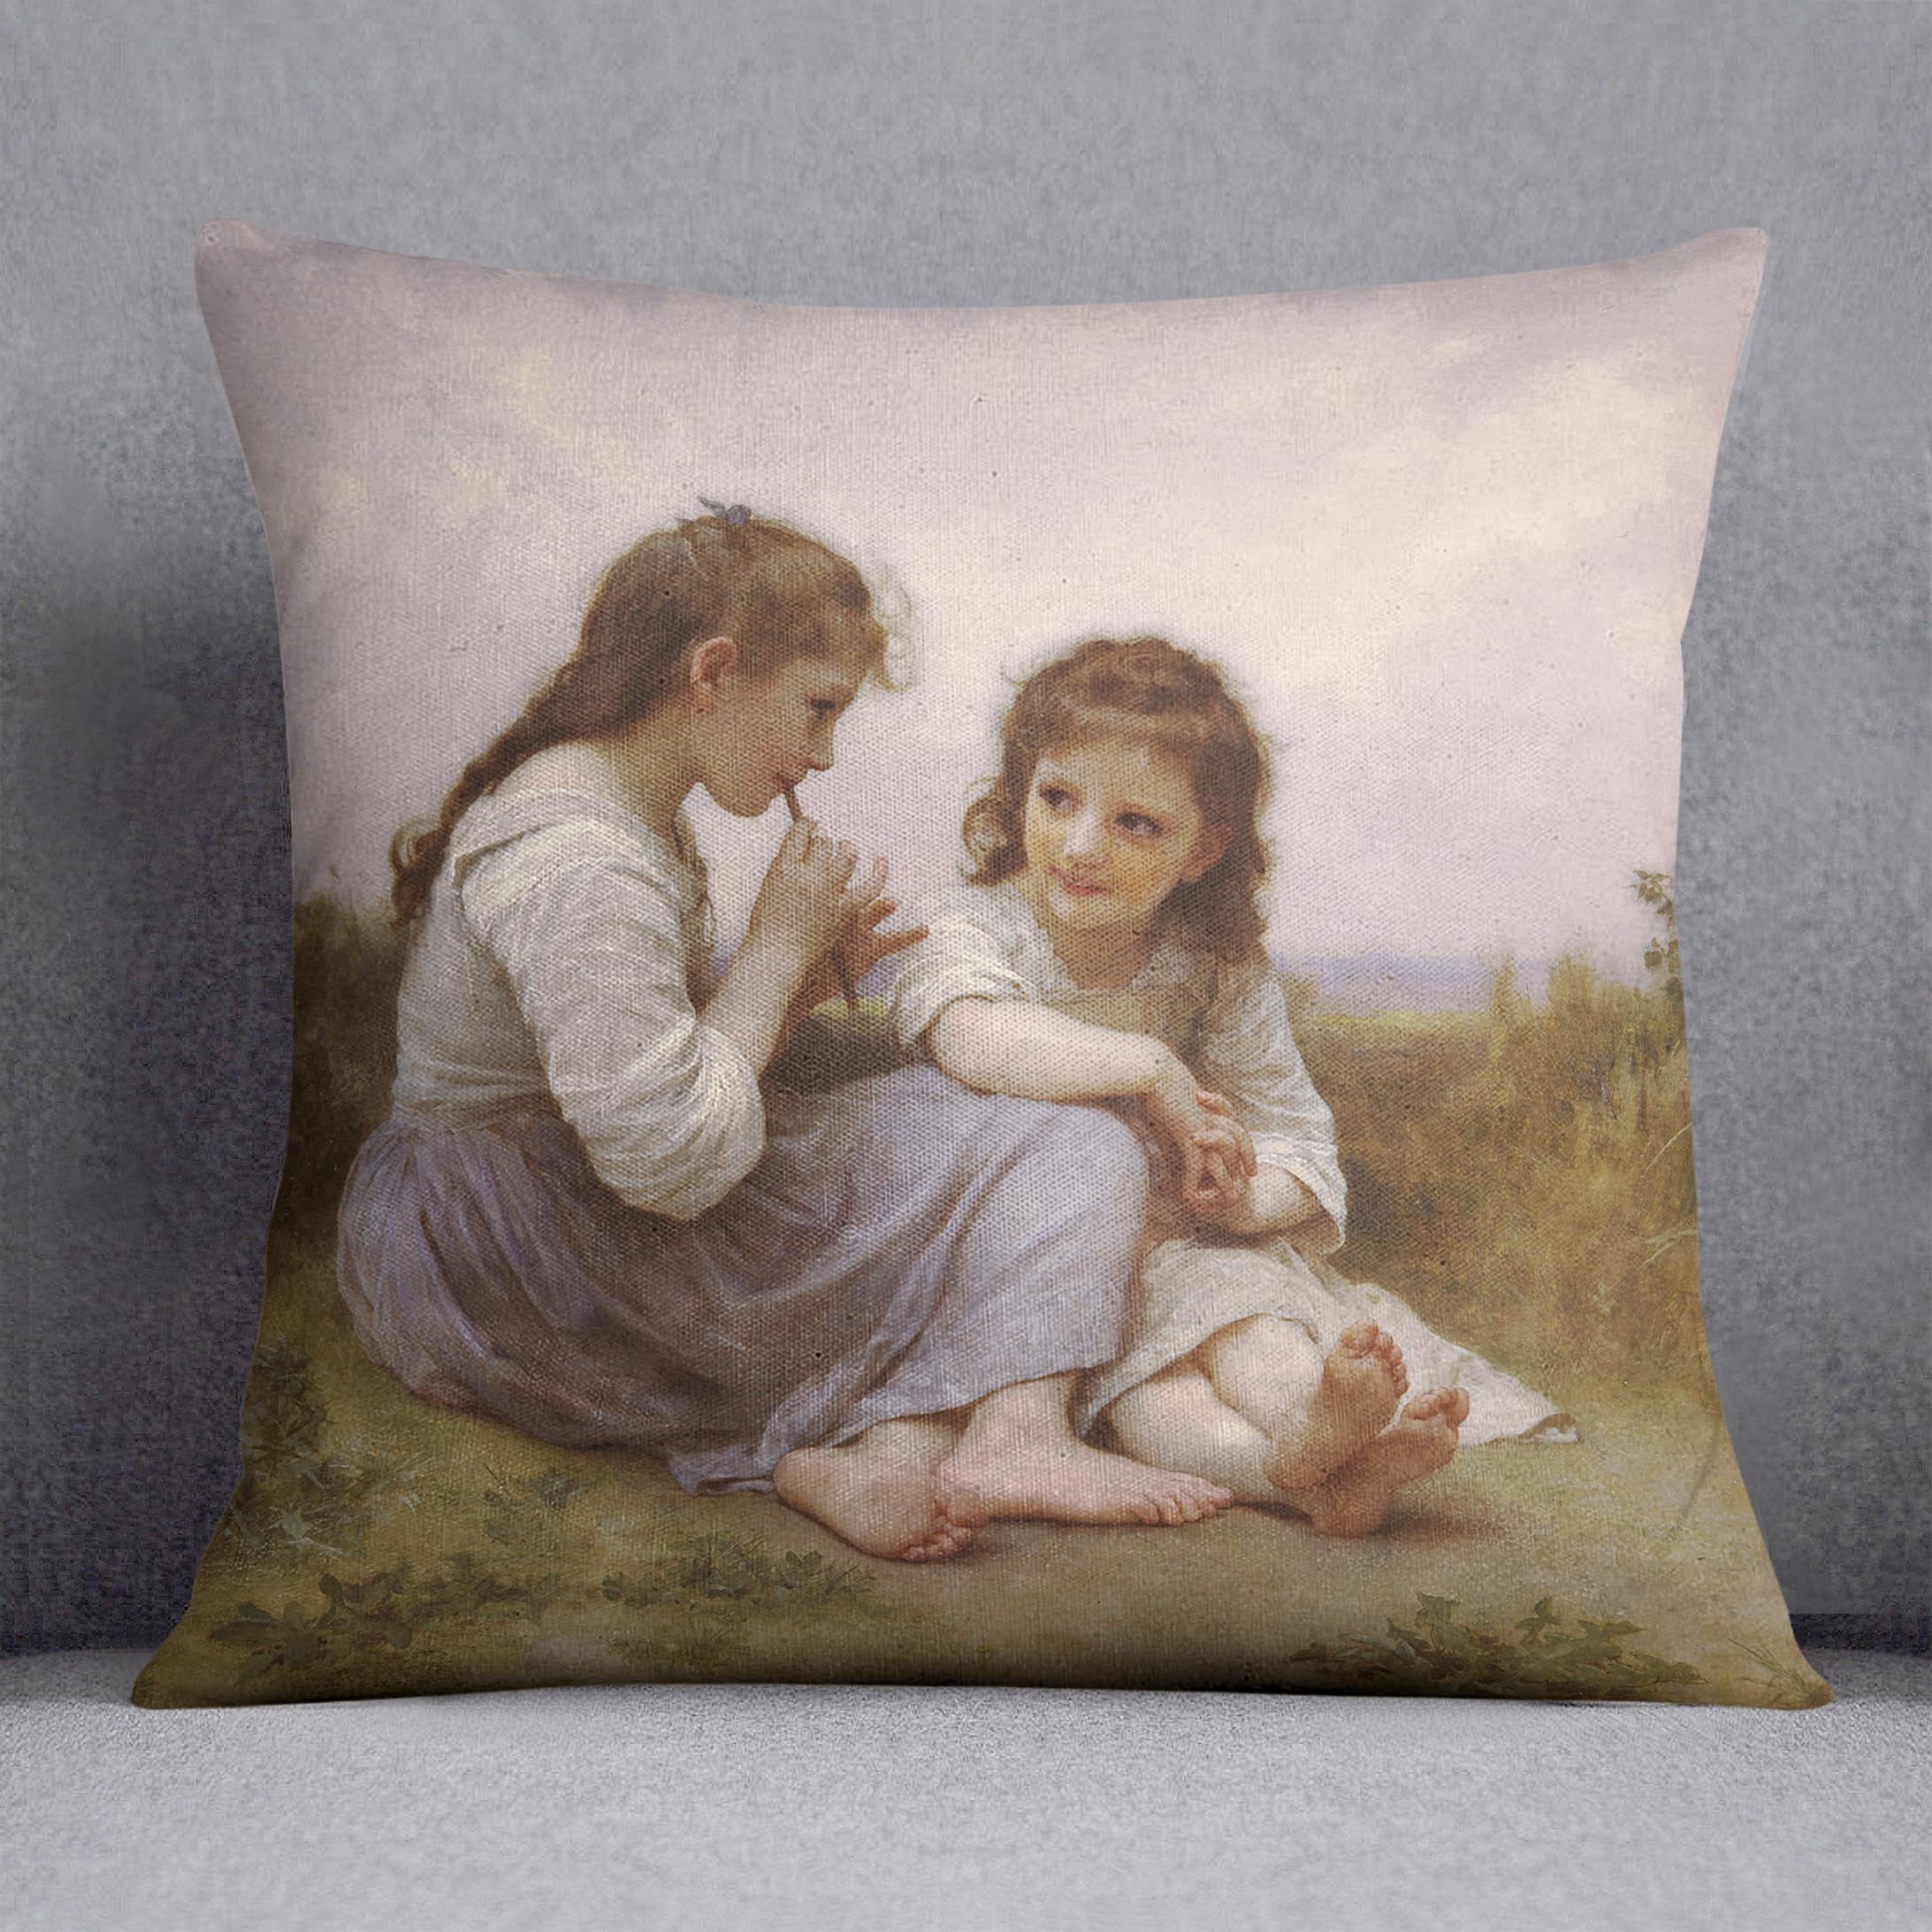 A Childhood Idyll 1900 By Bouguereau Throw Pillow